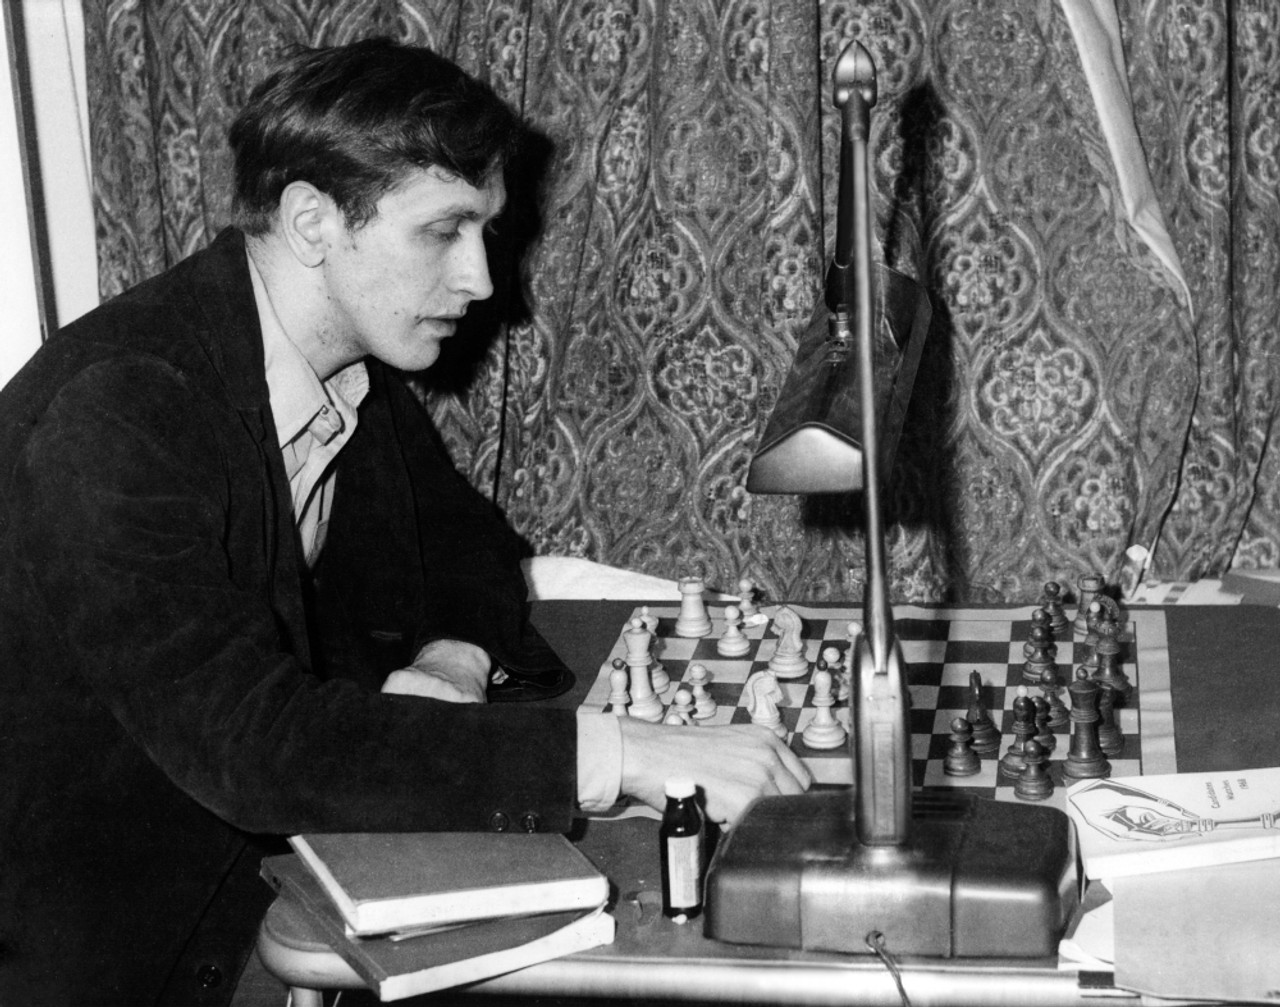 Bobby Fischer, Sport